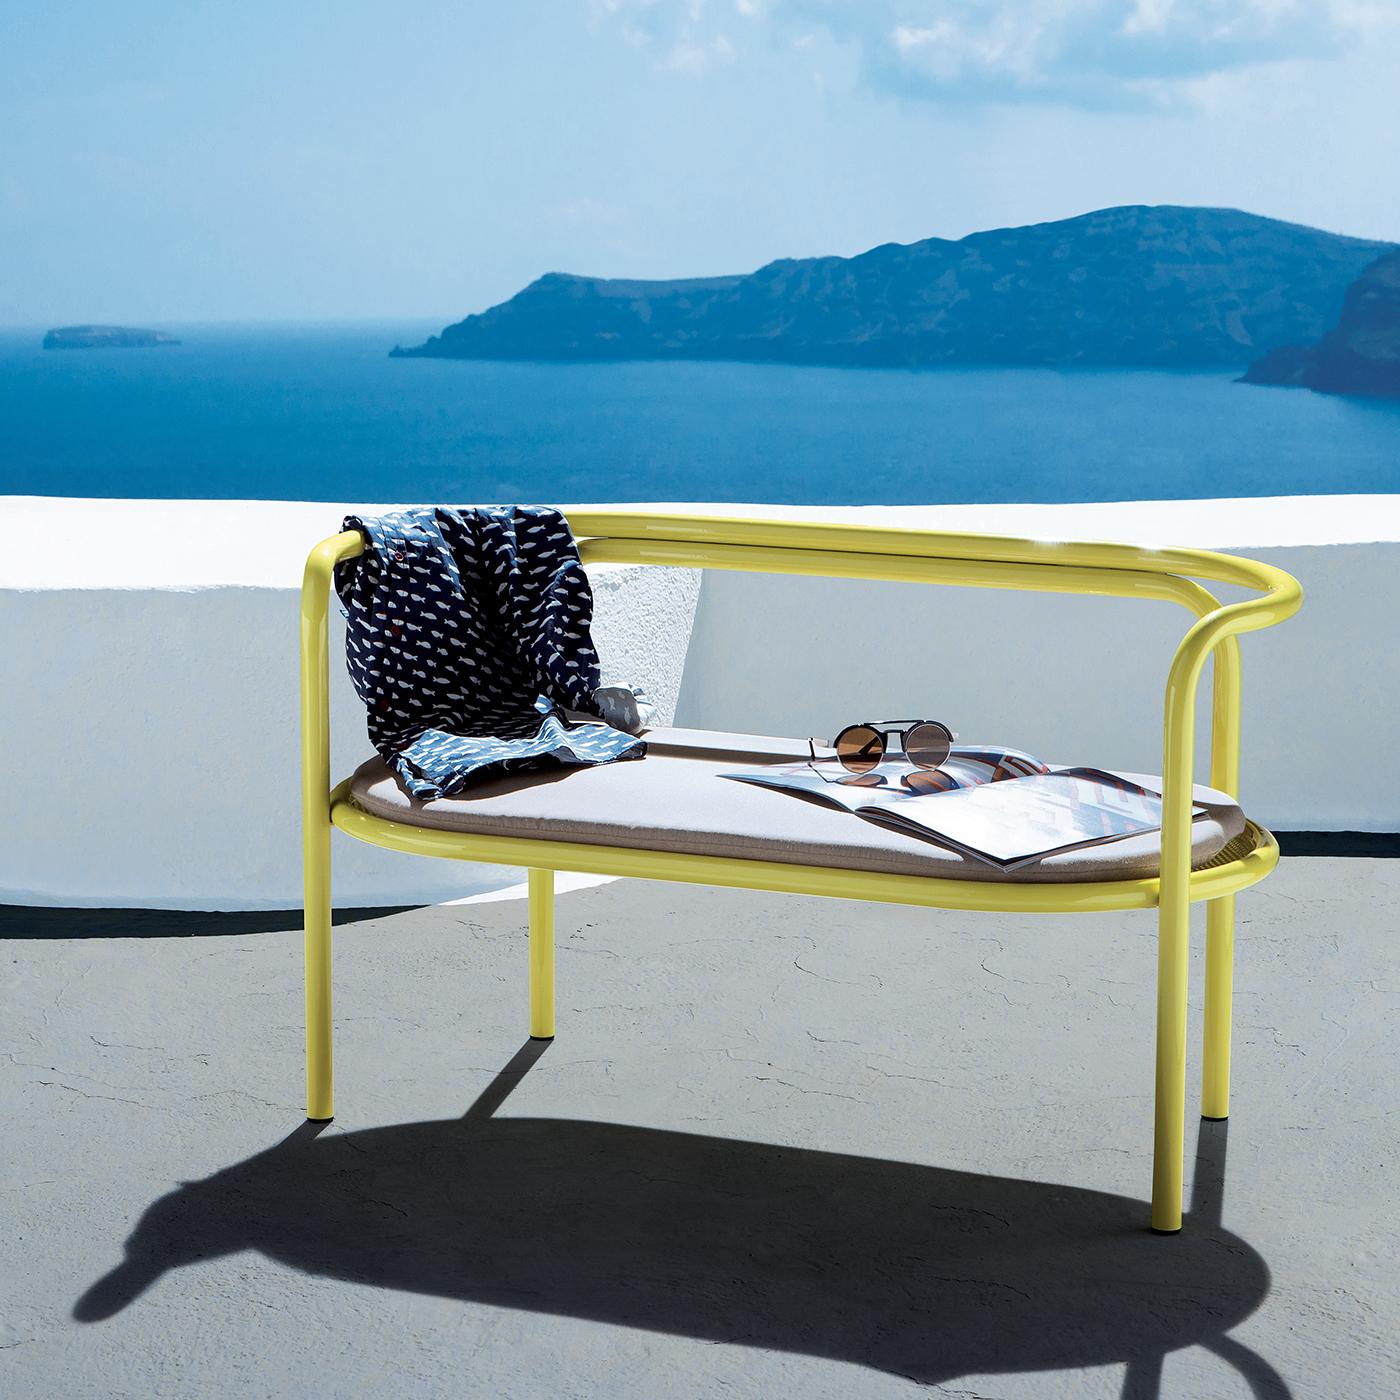 Als Teil einer kompletten Outdoor-Kollektion, die 1964 von dem italienischen Architekten Gae Aulenti entworfen und 2016 von Exteta neu aufgelegt wurde, zeichnet sich dieser auffällige Sessel durch eine schlichte Silhouette aus, die von einer kühnen